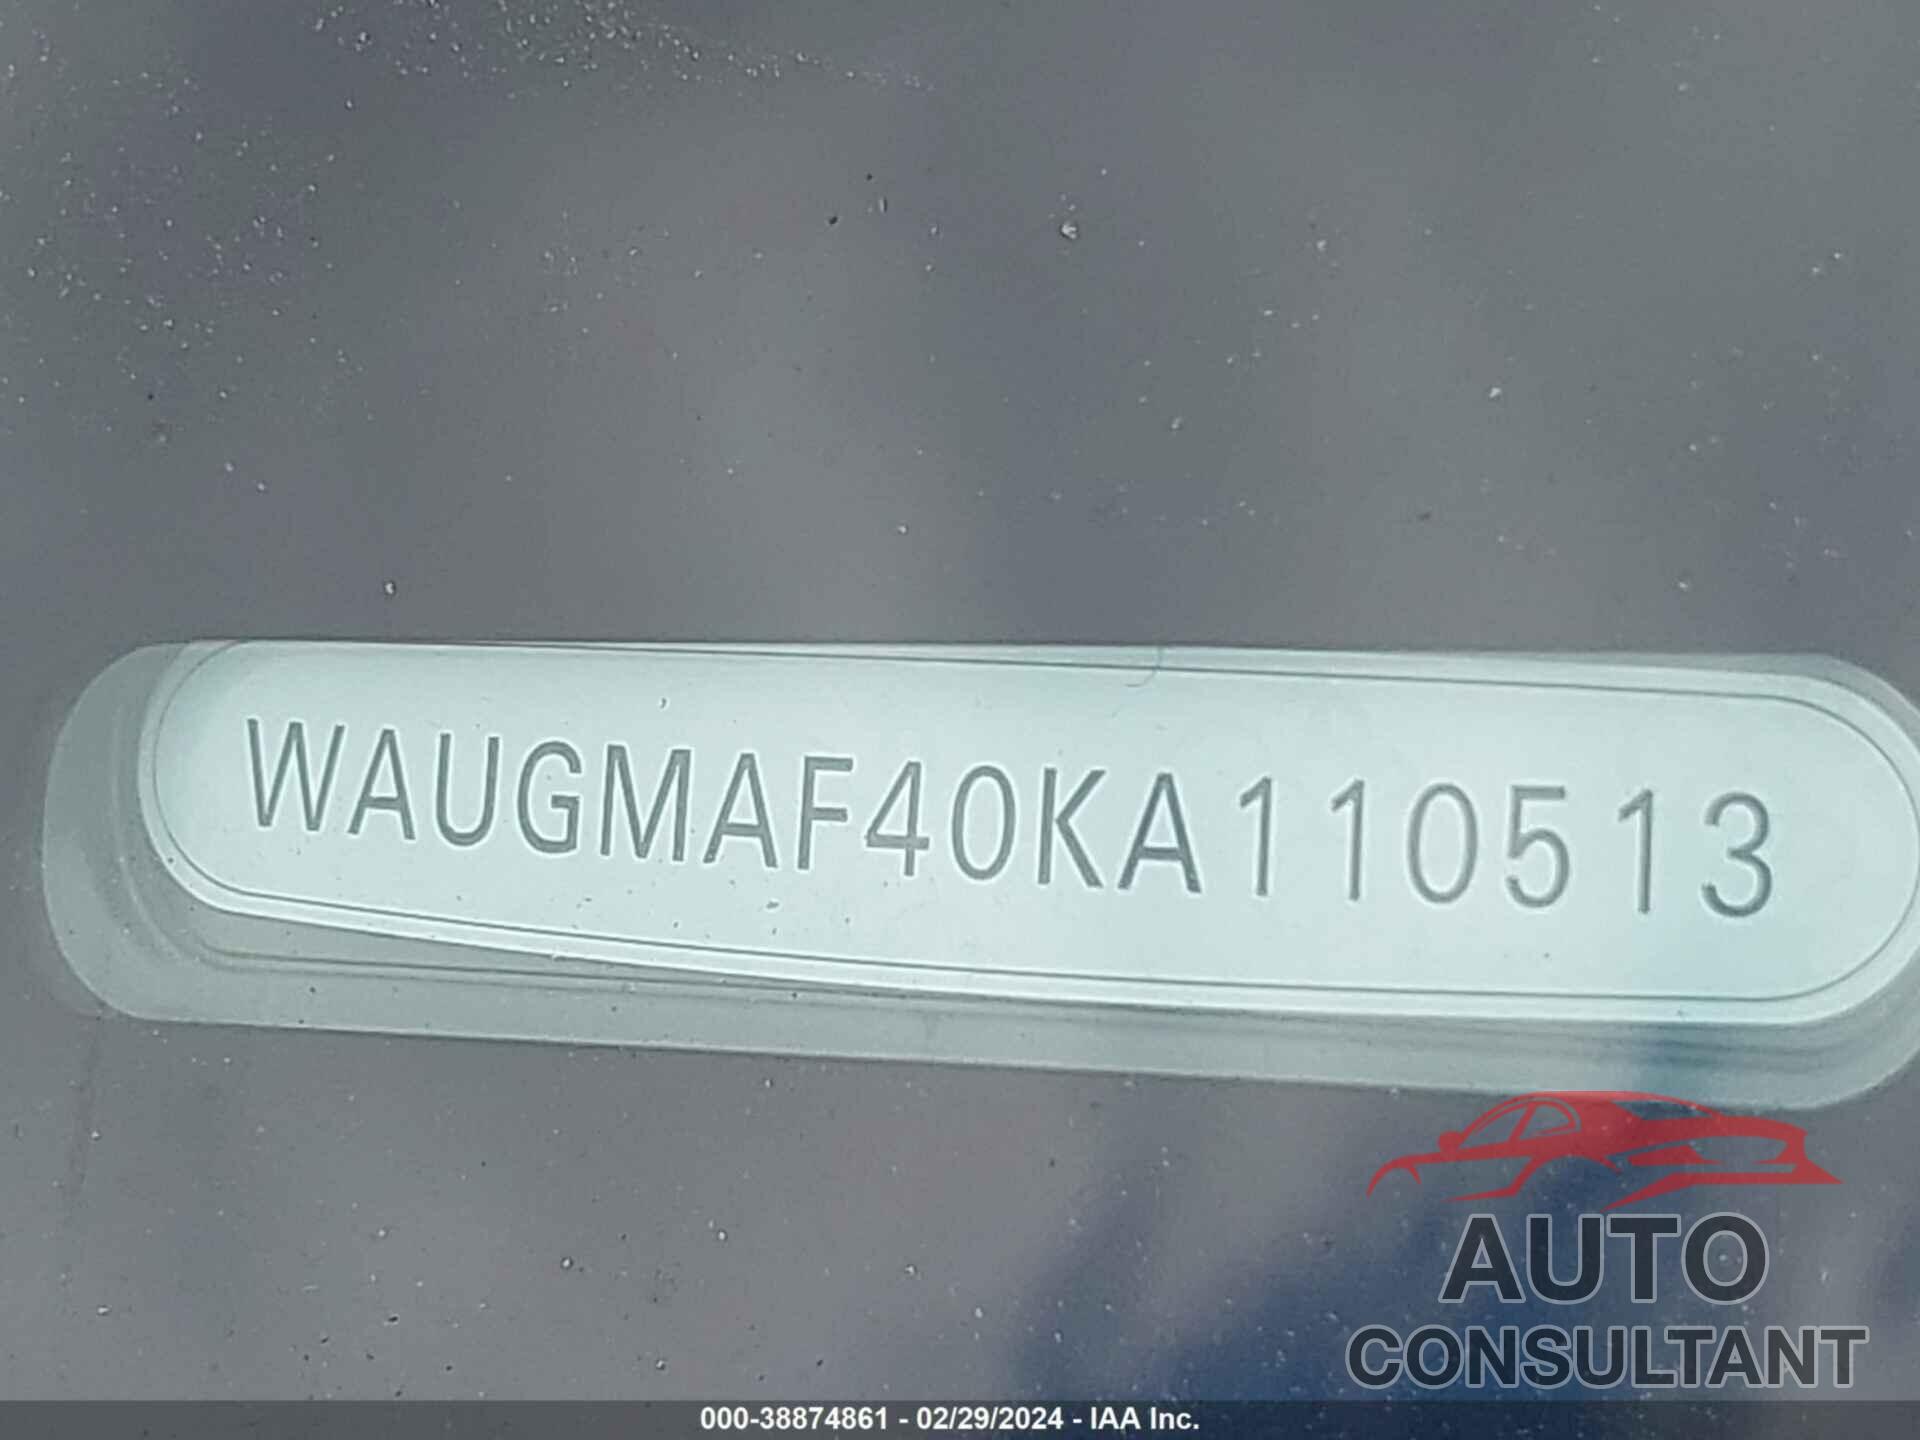 AUDI A4 2019 - WAUGMAF40KA110513